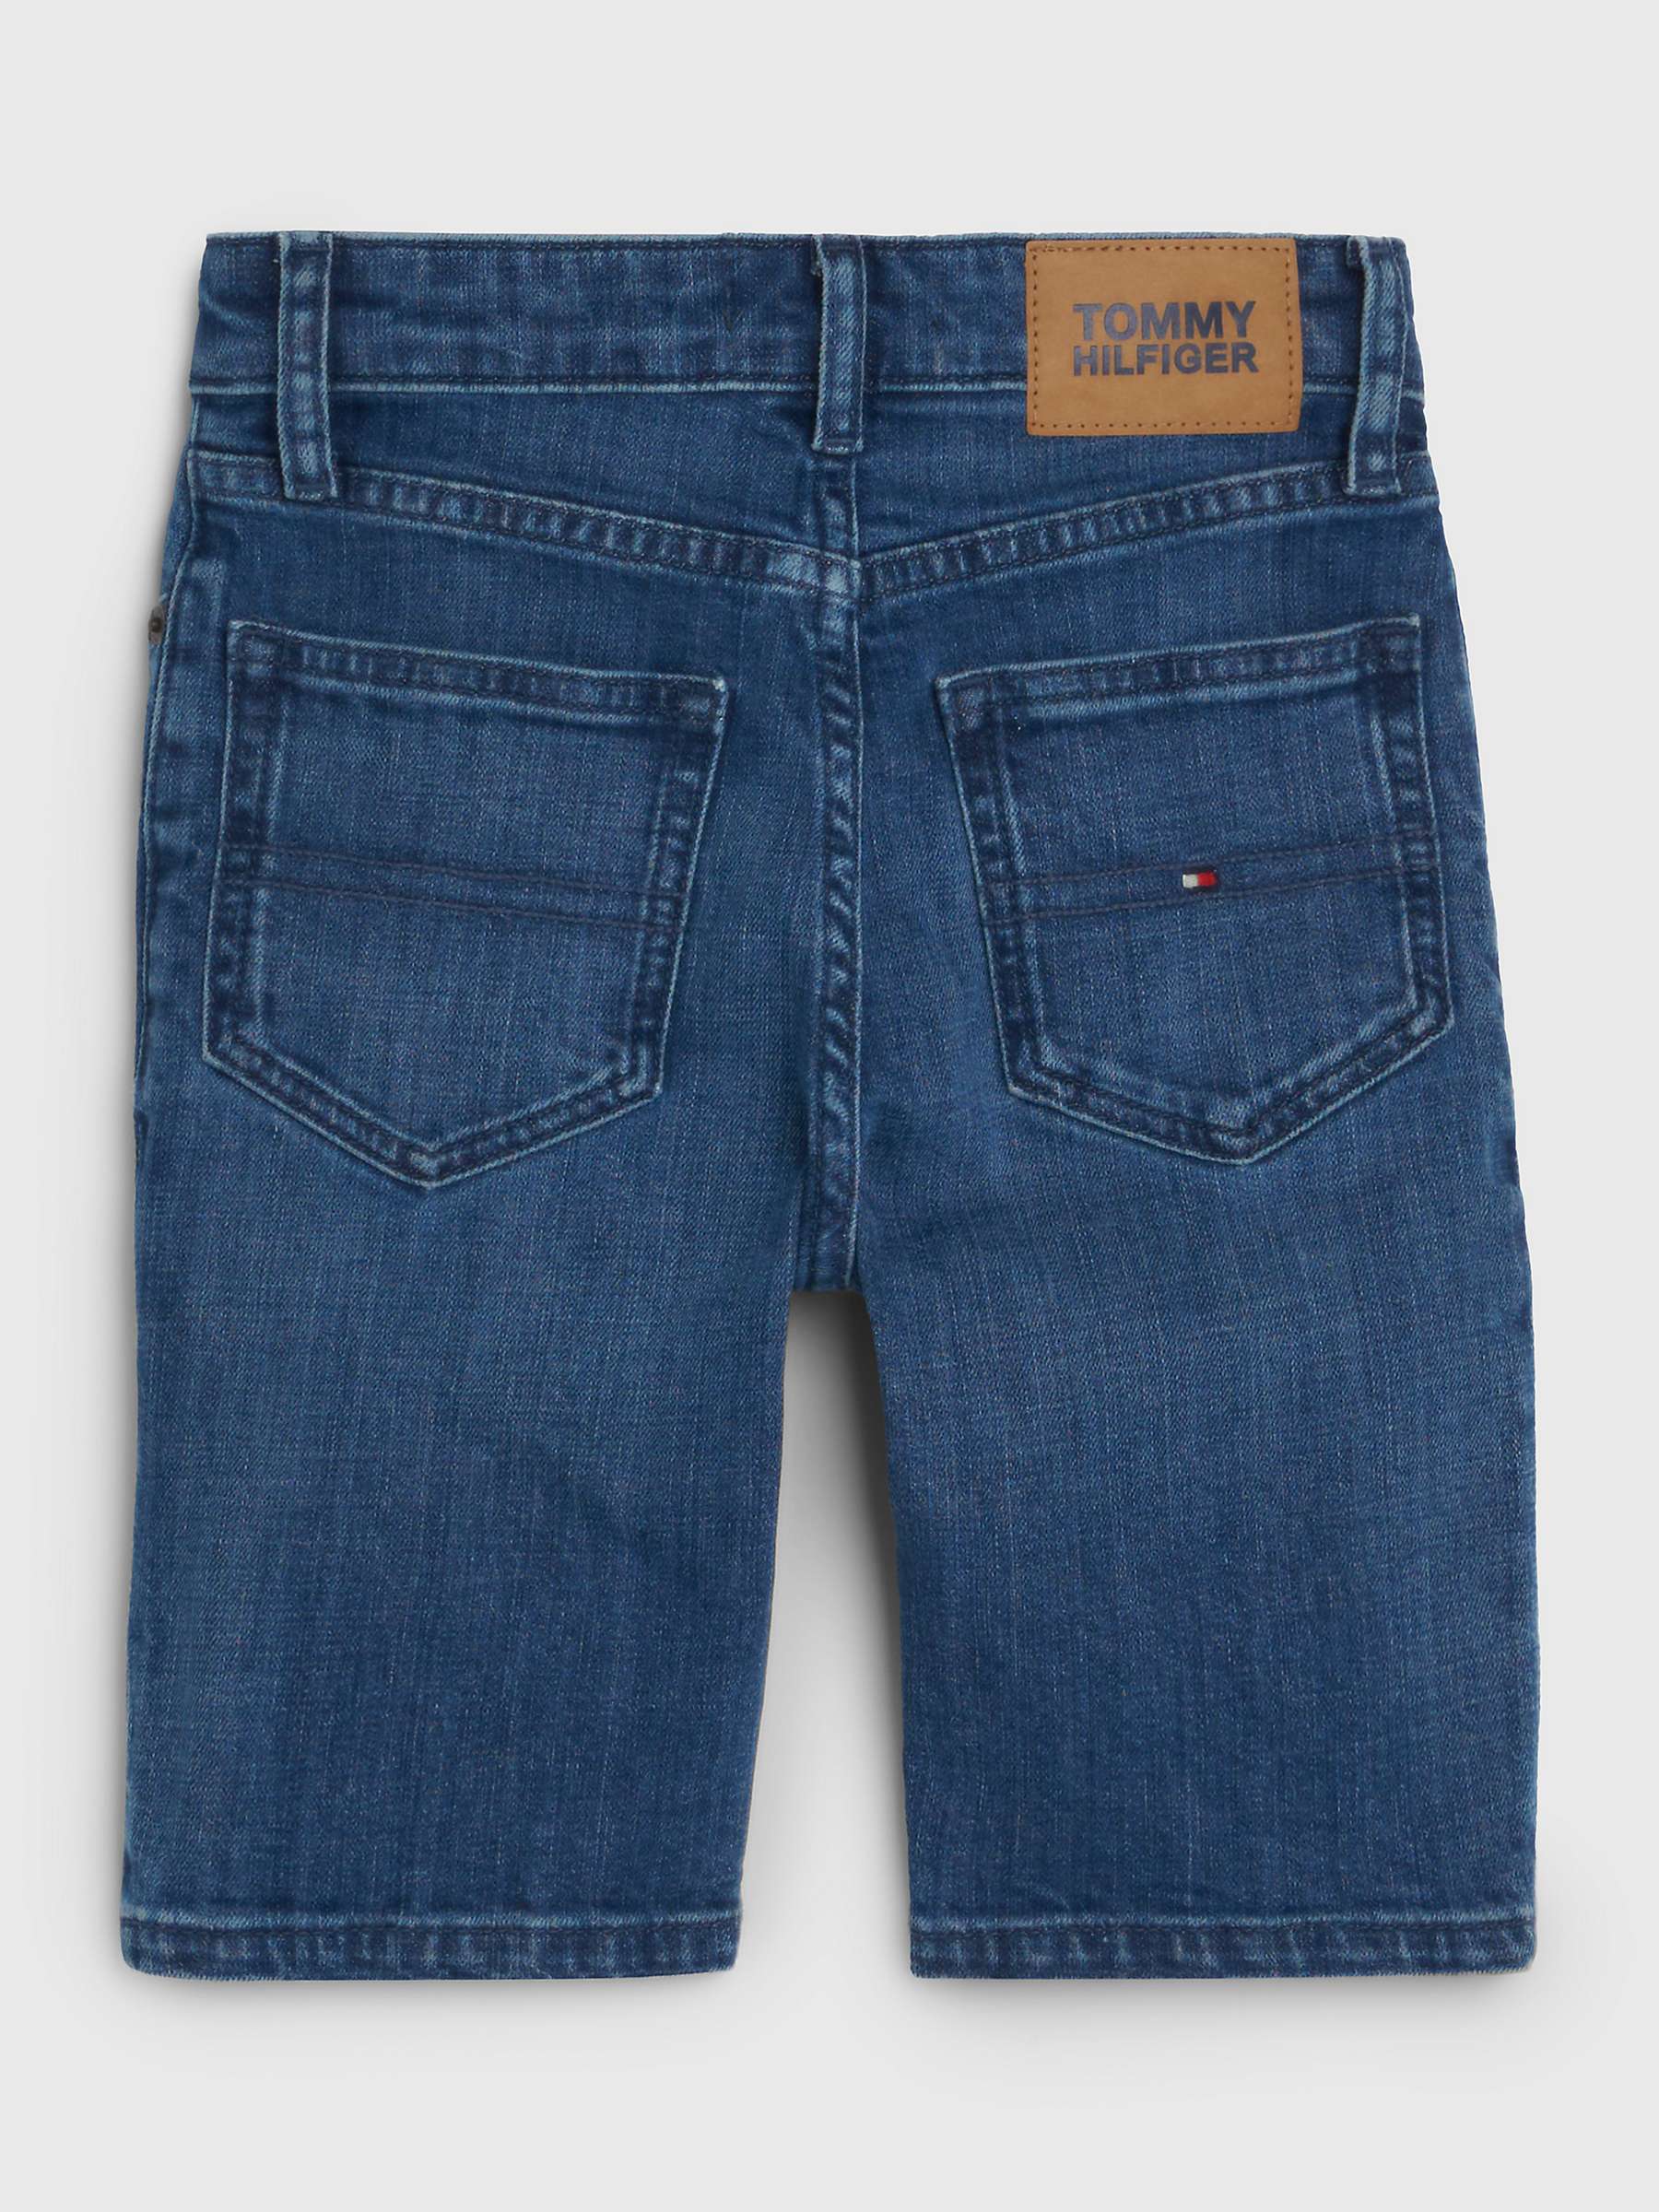 Buy Tommy Hilfiger Kids' Scanton Denim Shorts, Blue Online at johnlewis.com